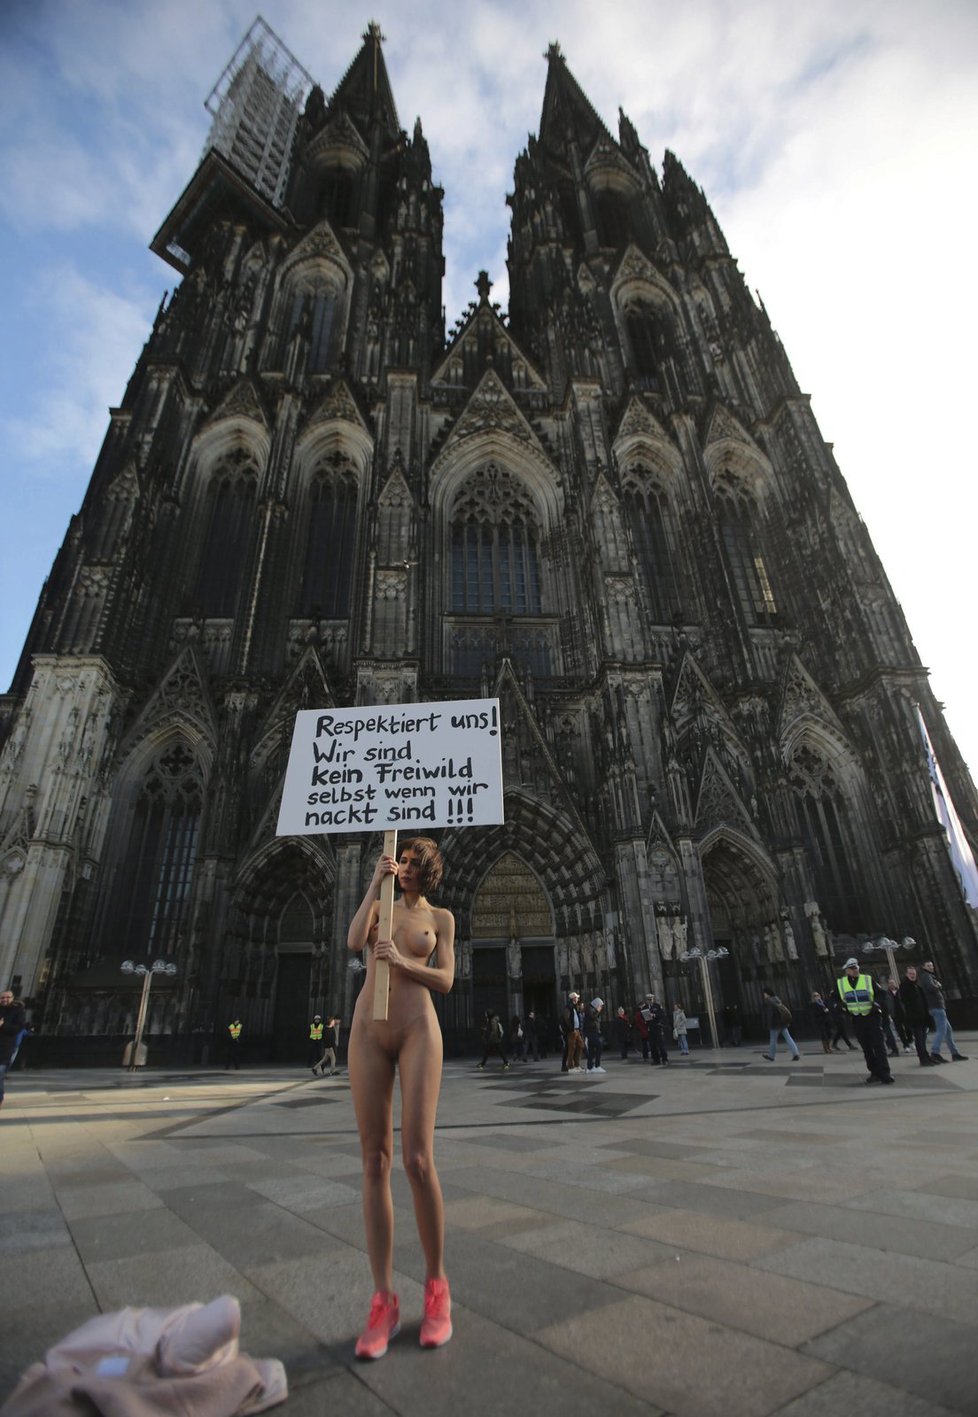 Švýcarská umělkyně Milo Moire s transparentem, se kterým nahá volala po respektu k ženám. Postavila se přitom v pátek před katedrálu v Kolíně nad Rýnem.